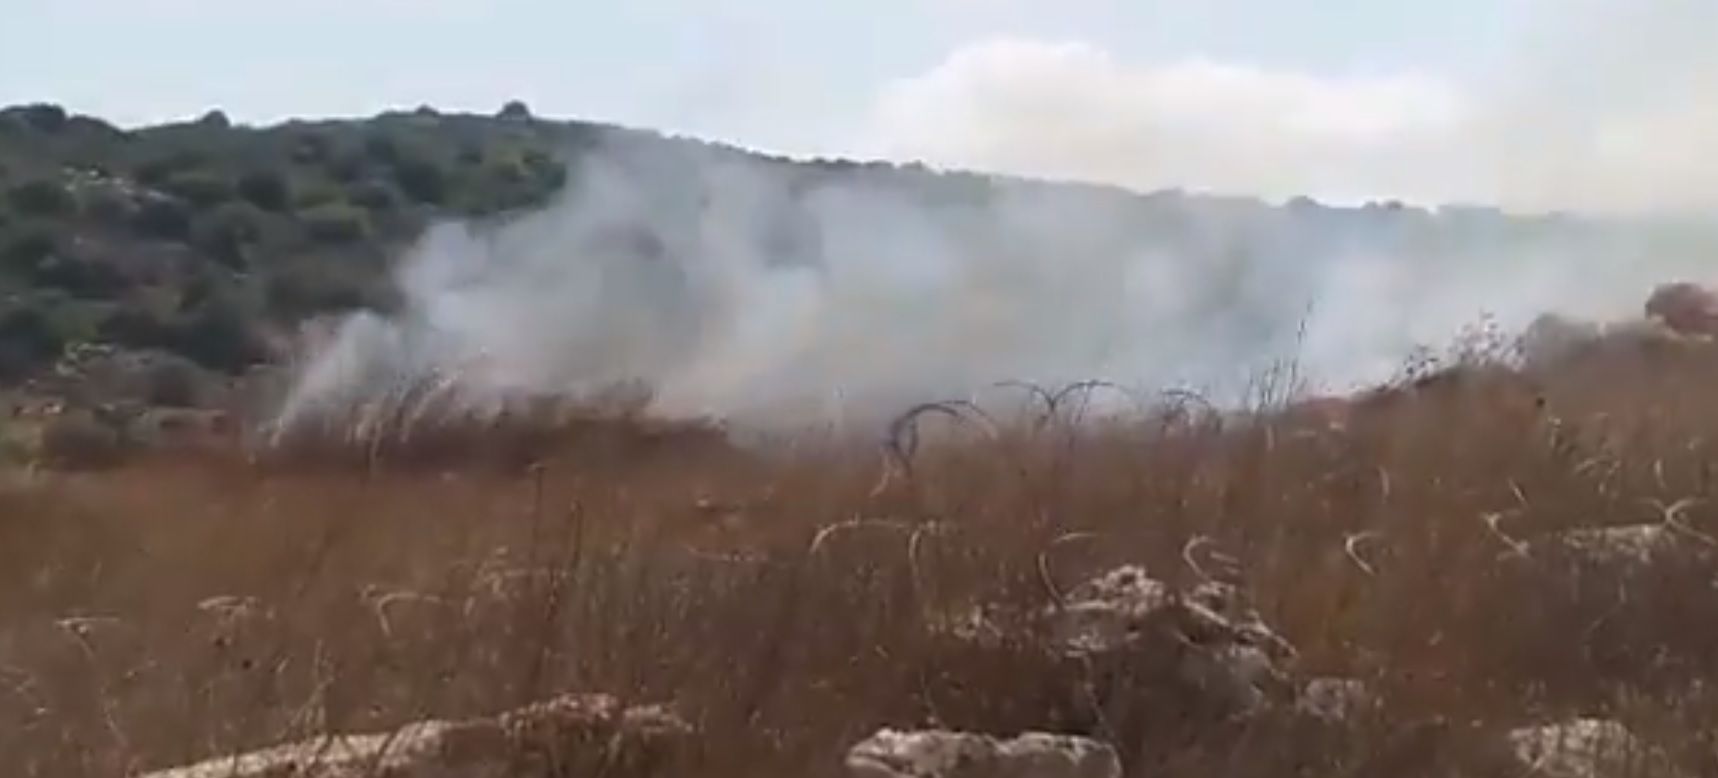 بالفيديو/ احدى دبابات الميركافا التي تخطت السياج التقني شرقي ميس الجبل ألقت قنبلة فوسفورية اثناء انسحابها ادت إلى إشعال حريق كبير في المنطقة 